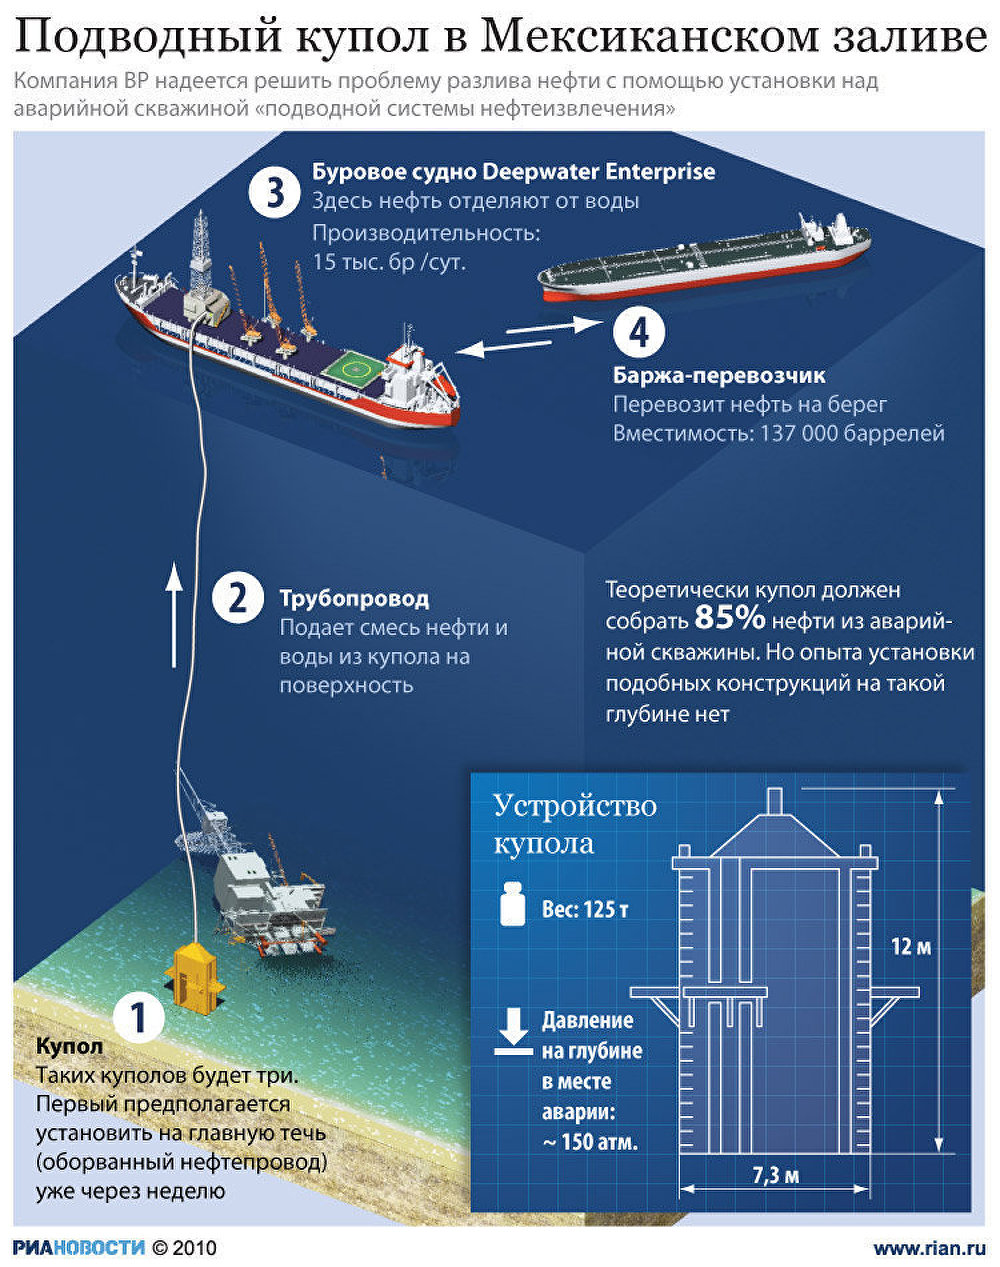 Подводный купол в Мексиканском заливе